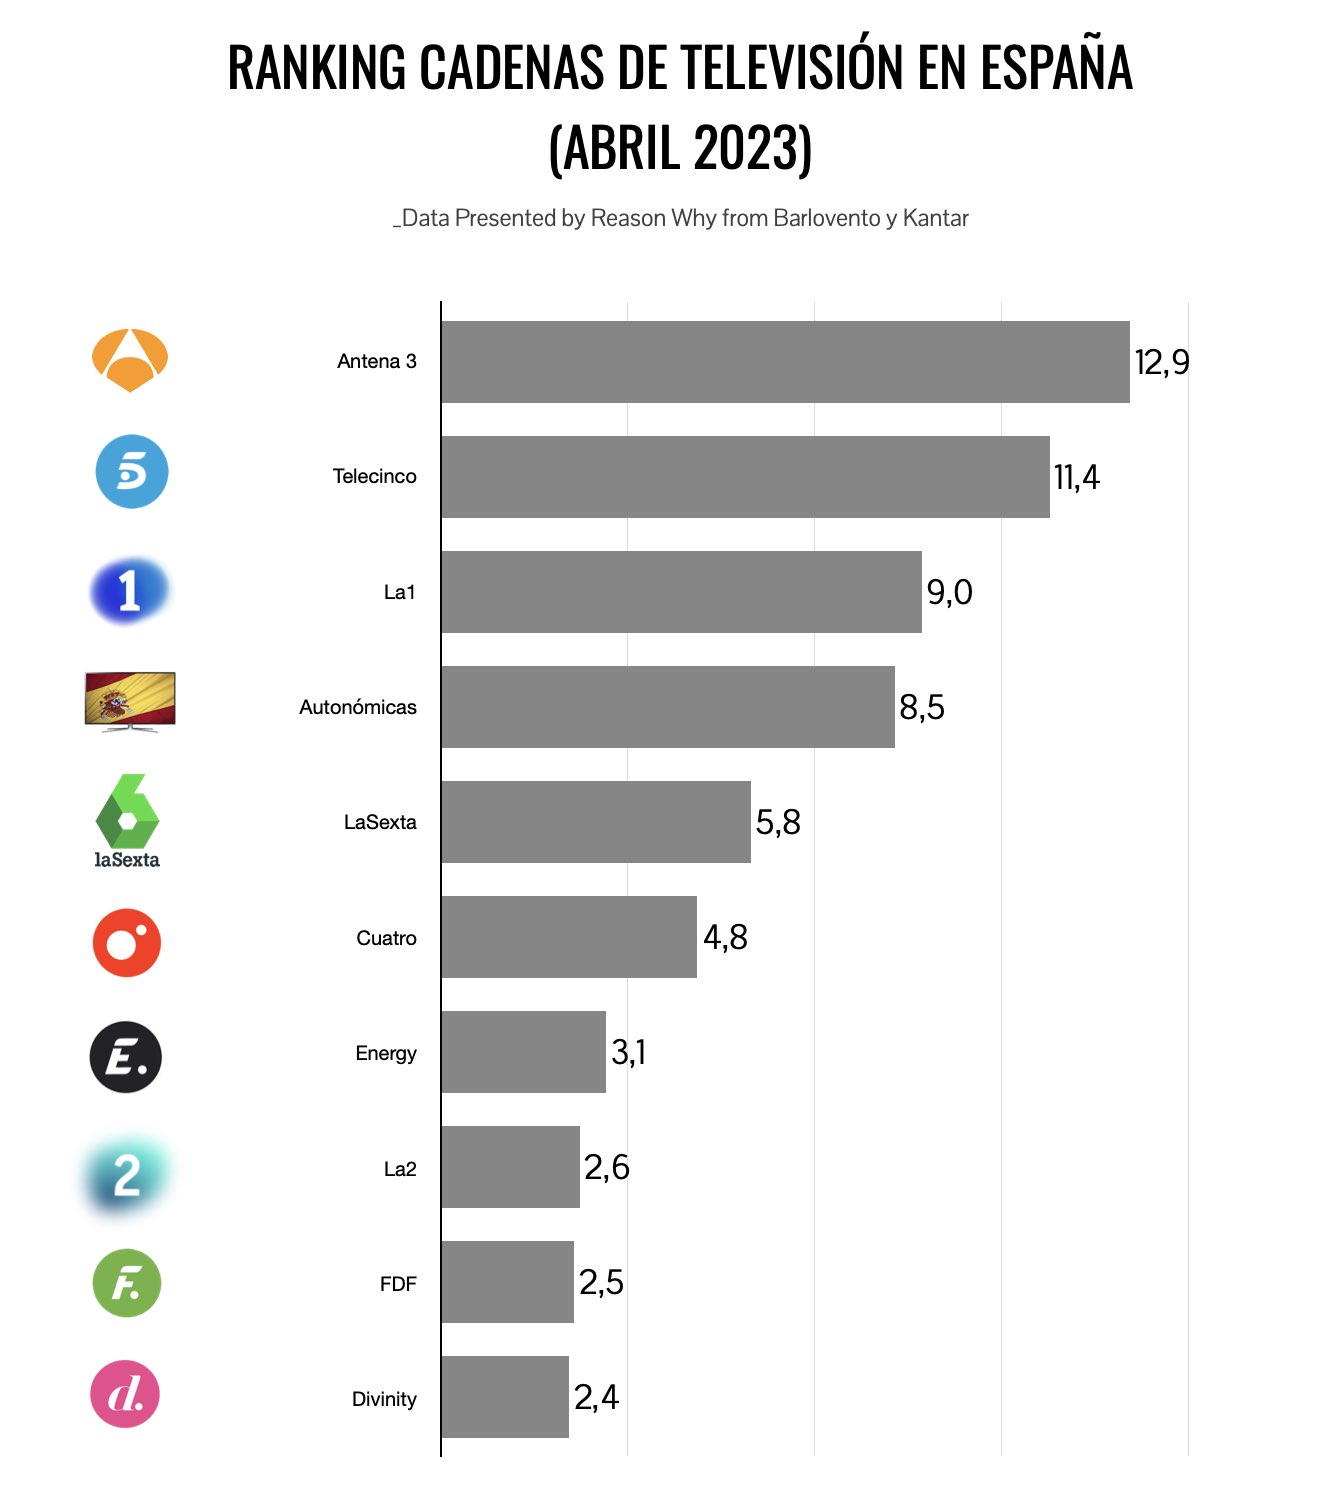 Ranking de cadenas de televisión por audiencia, abril 2023